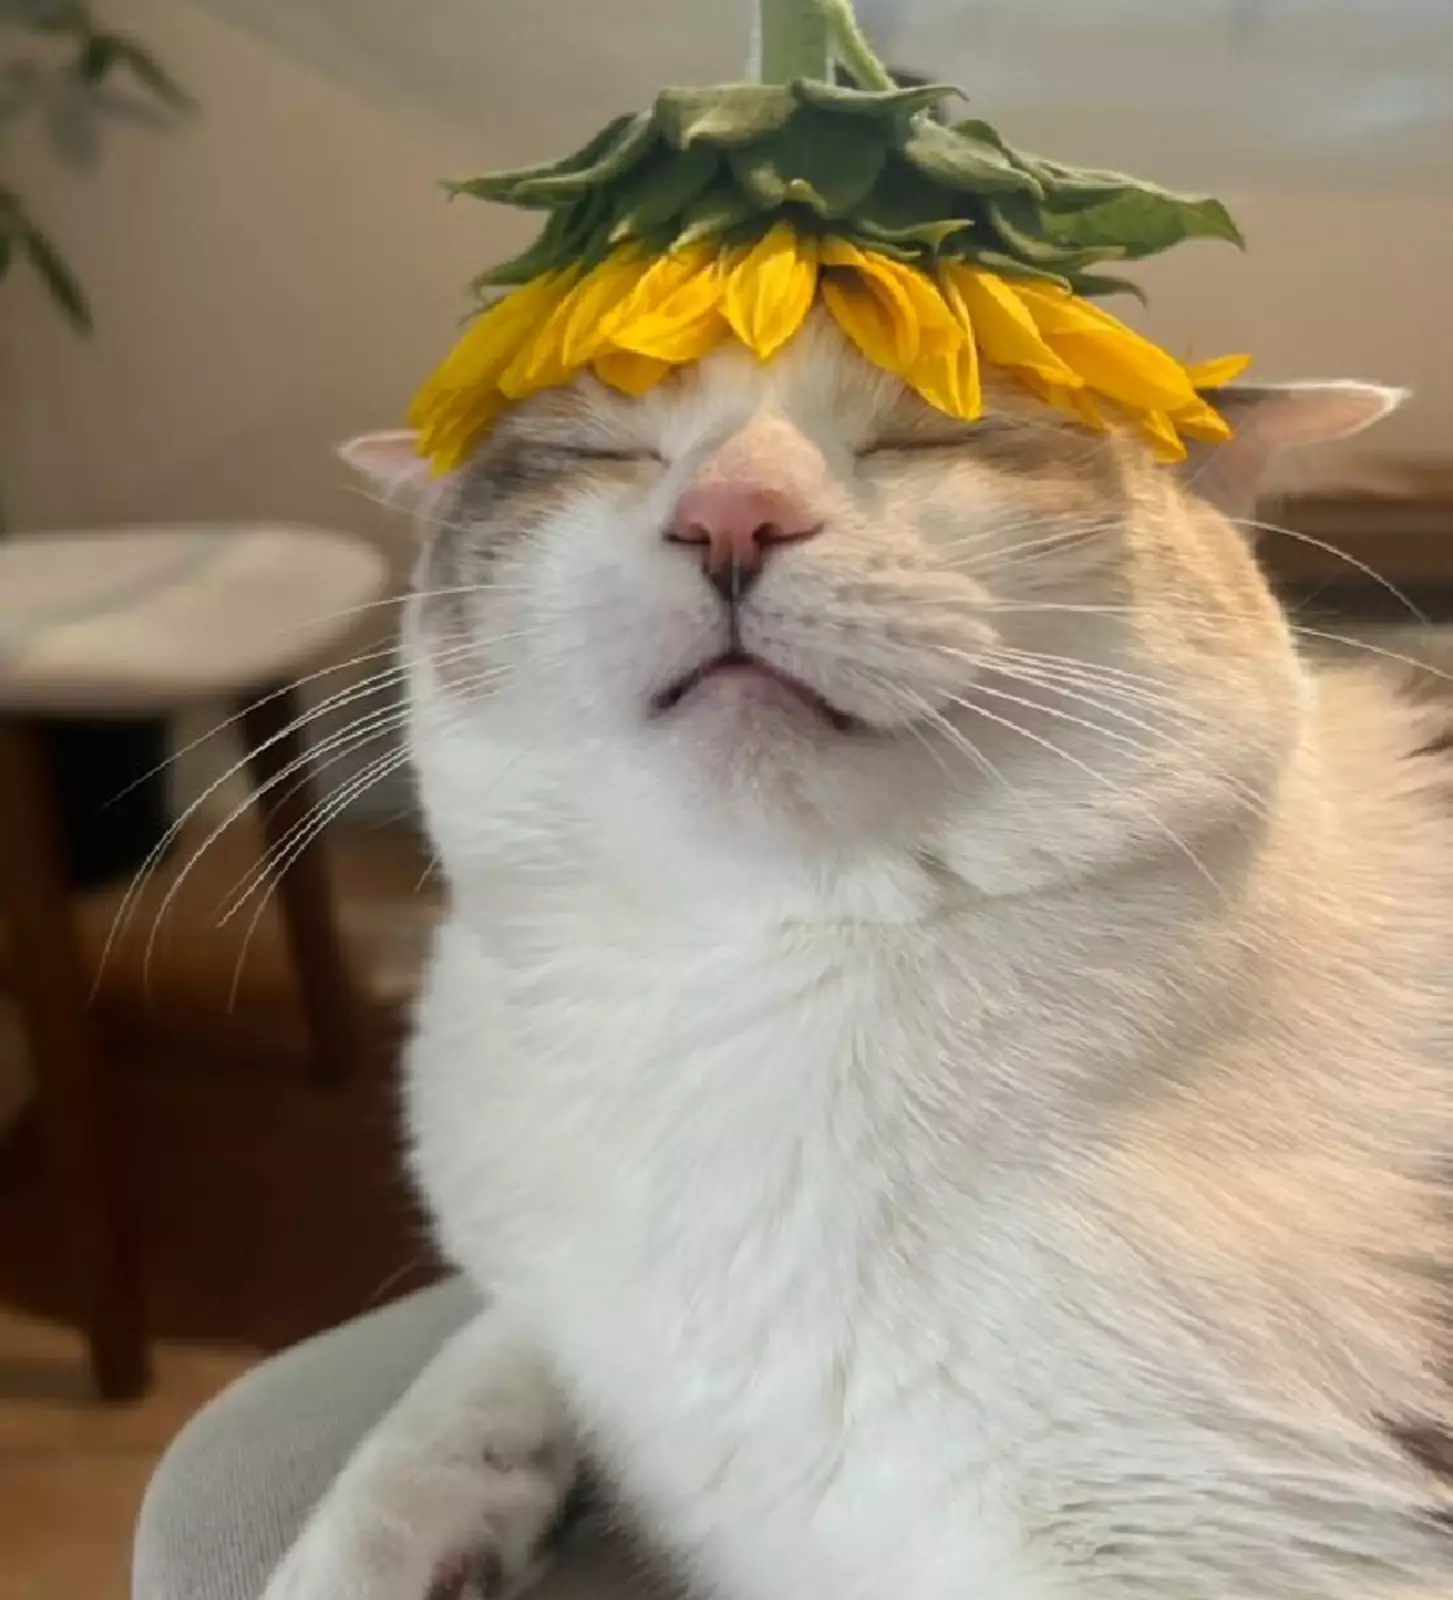 Котейке очень нравится его новая шляпка из подсолнуха.